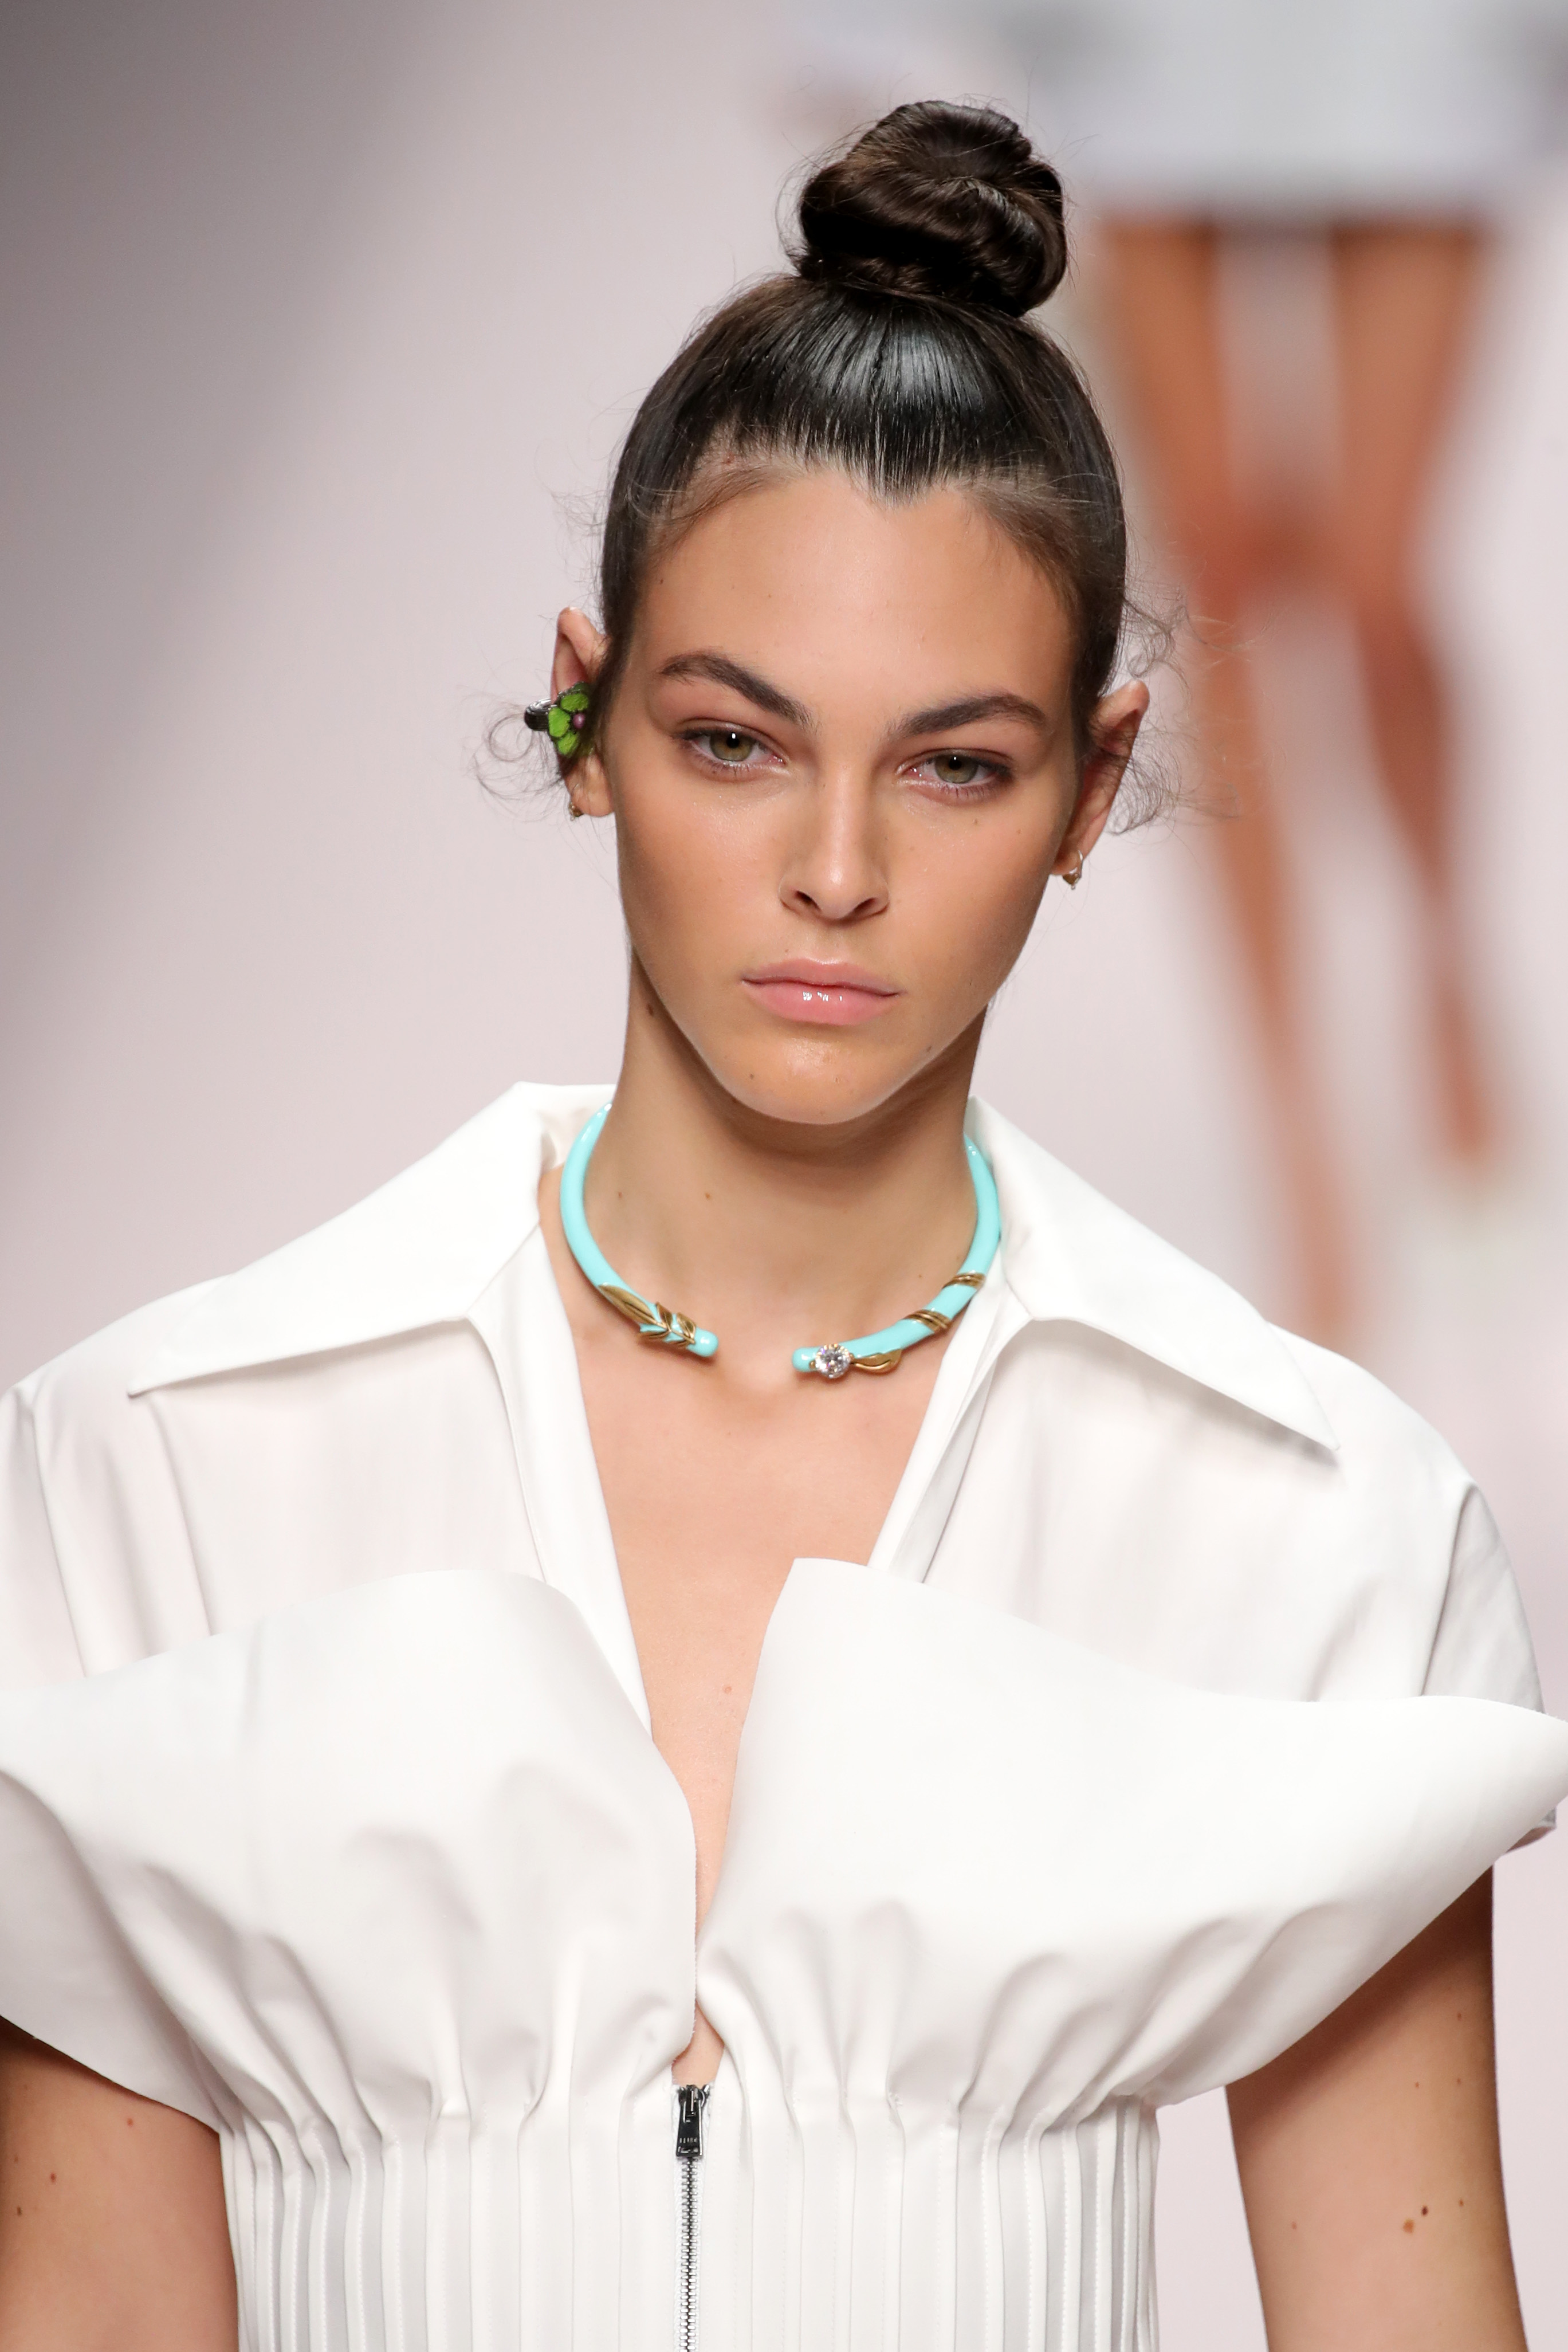 Витория е родена на 7 юни 1998 година в Бреша, Италия. С пленителните си зелени очи и уверена походка тя е забелязана от модни агенти още когато е на 14. Оттогава Витория е дефилирала на ревюта на едни от най-световнопризнатите марки във висшата мода като Chanel, Christian Dior, Armani, Prada и Tommy Hilfiger. Ако не беше станала модел, Витория би учила психология или актьорско майсторство.